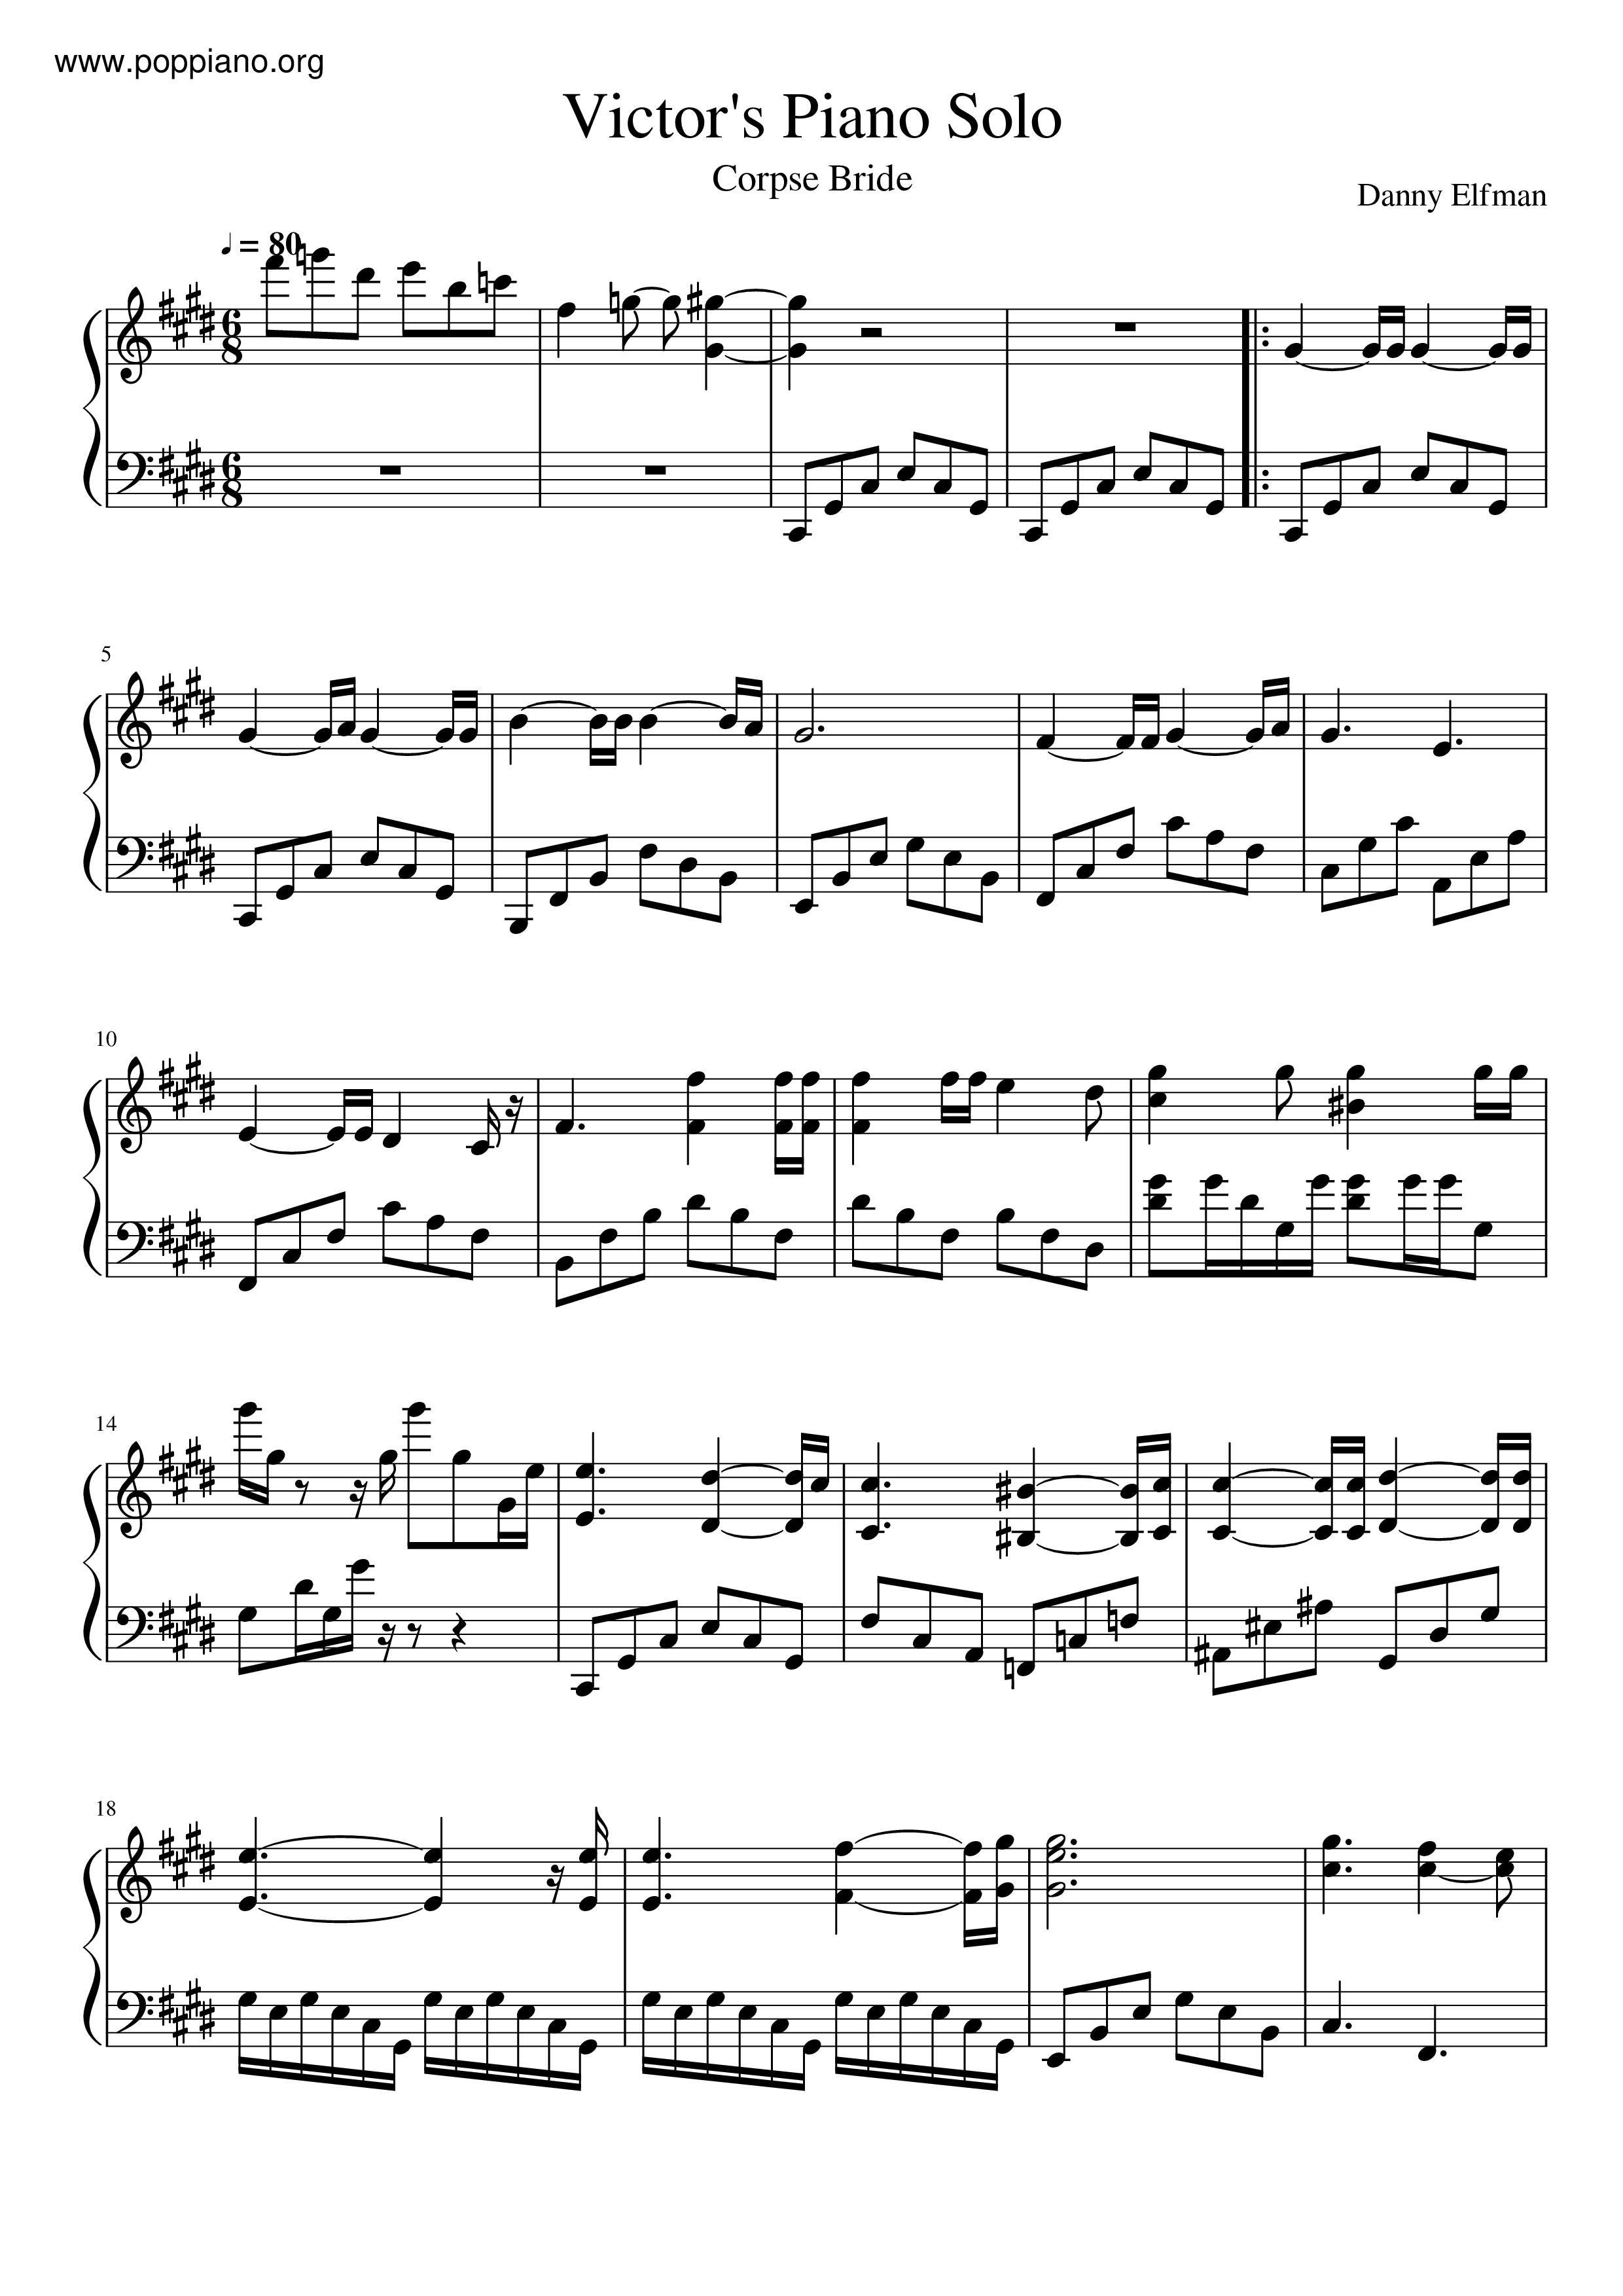 Tim Burton's Corpse Bride - Victor's Piano Solo Score